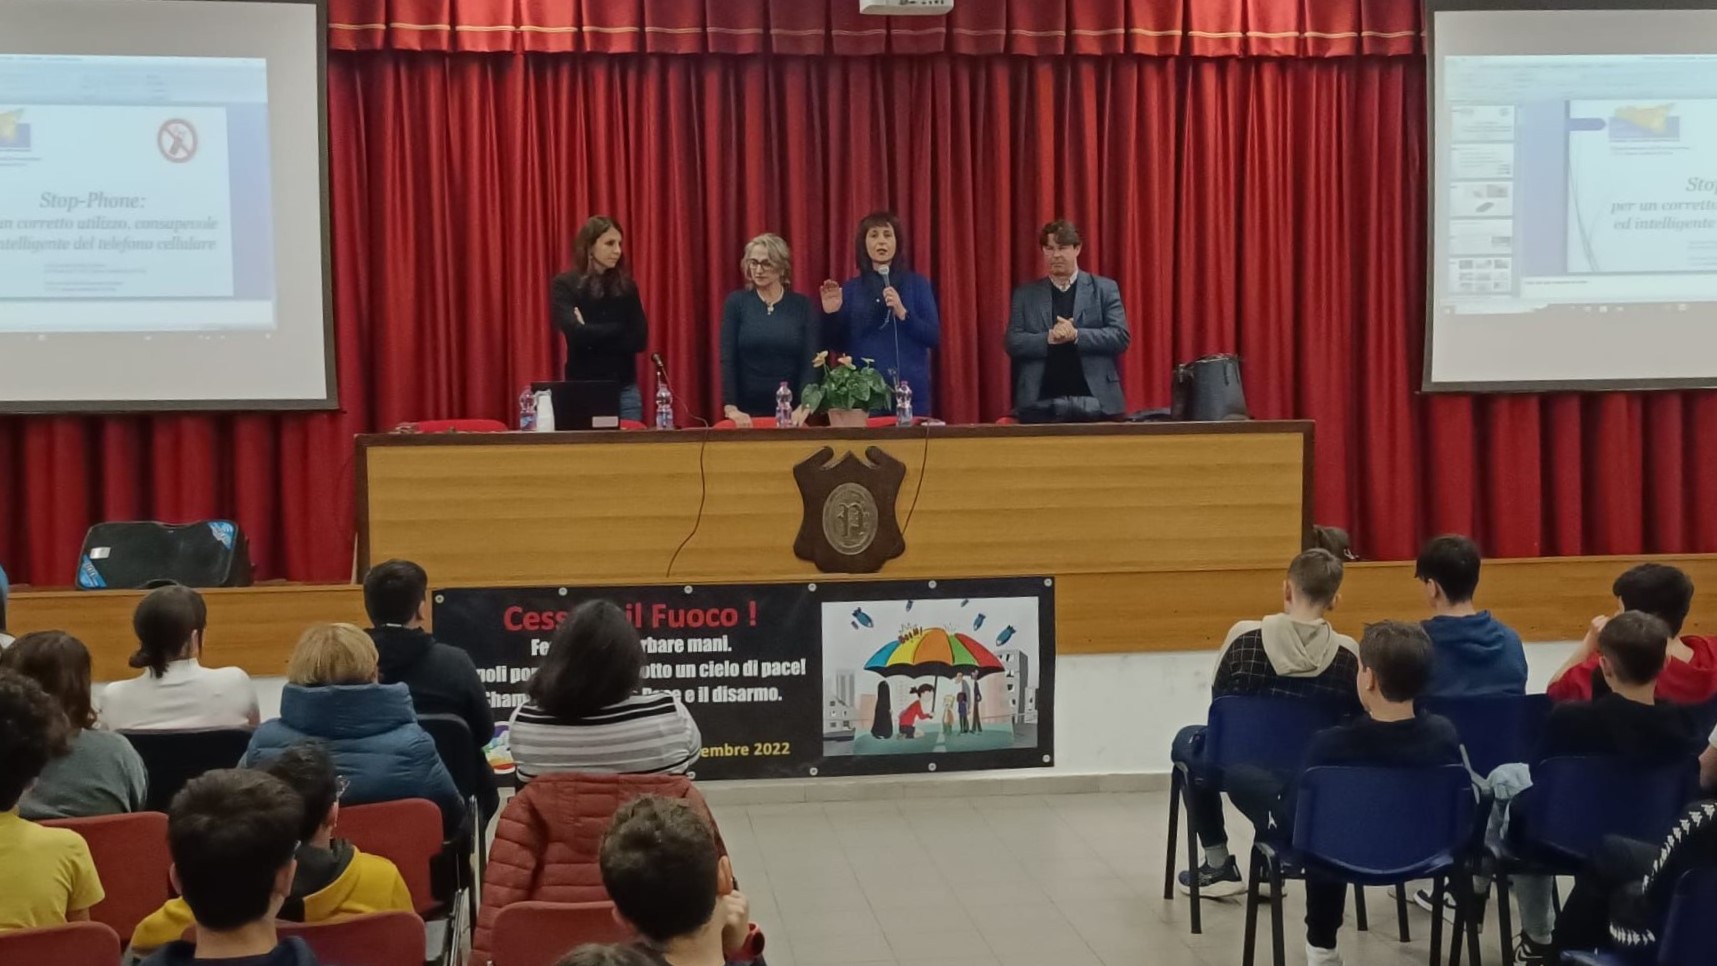 Continua il progetto dell’Asp di Catania “Stop Phone”: per educare gli studenti a conoscere i rischi dei cellulari